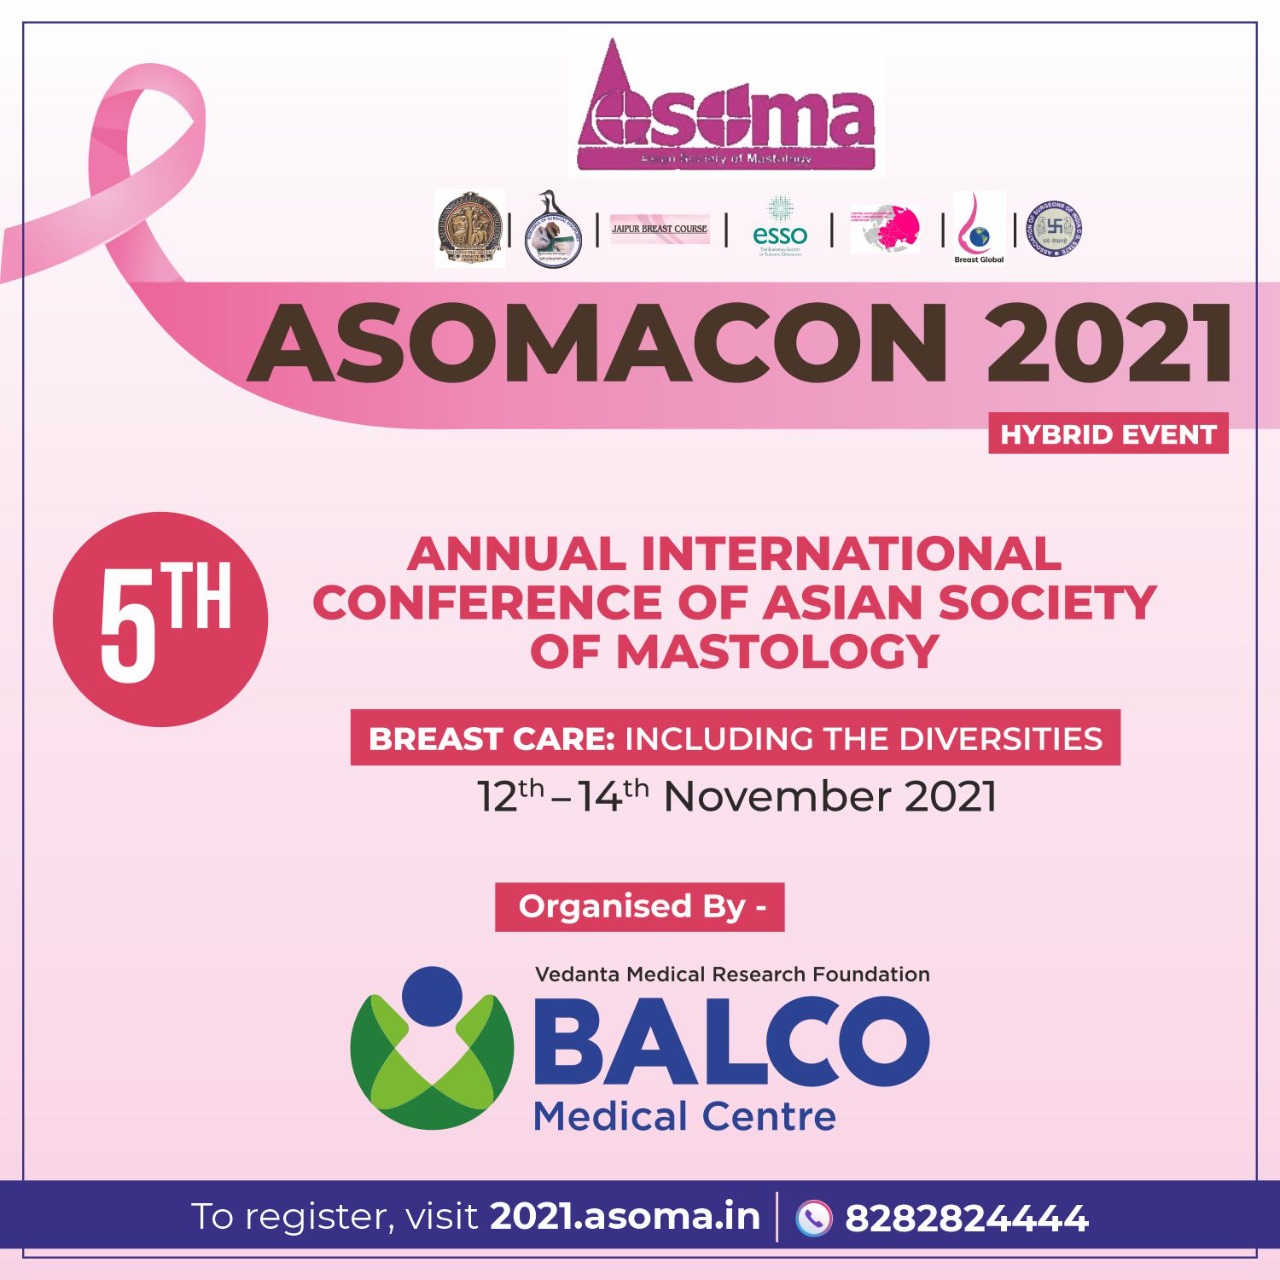 बालको मेडिकल सेंटर करेगा असोमाकॉन 2021 की मेजबानी, स्तन देखभाल पर प्रदेश में होगा पहला अंतरराष्ट्रीय सम्मेलन